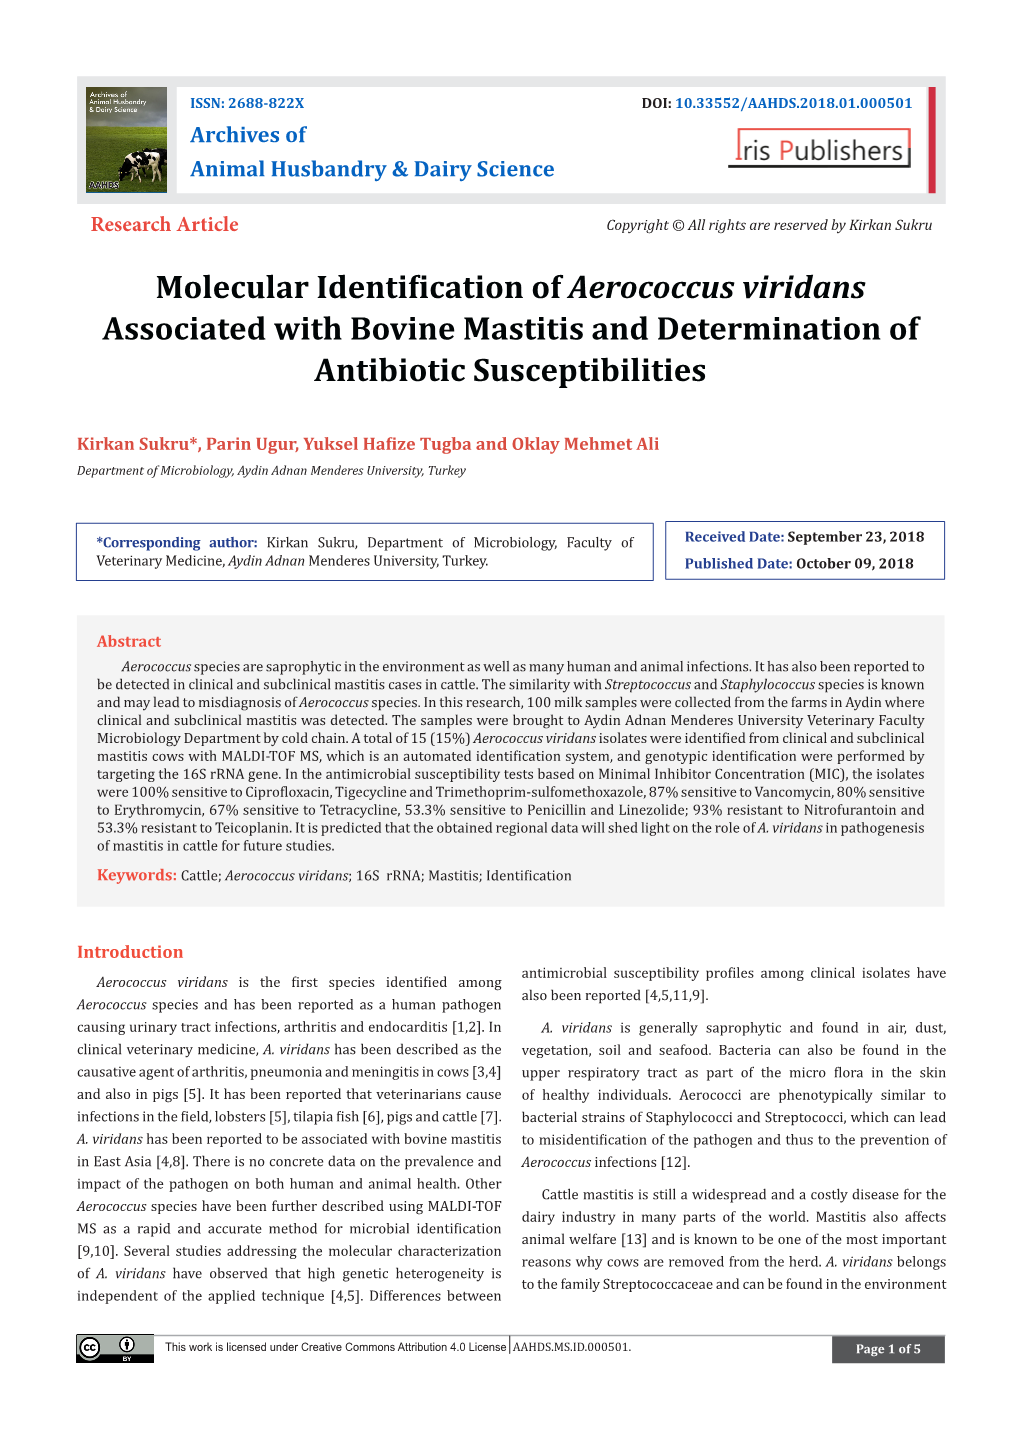 Molecular Identification of Aerococcus Viridans Associated with Bovine Mastitis and Determination of Antibiotic Susceptibilities